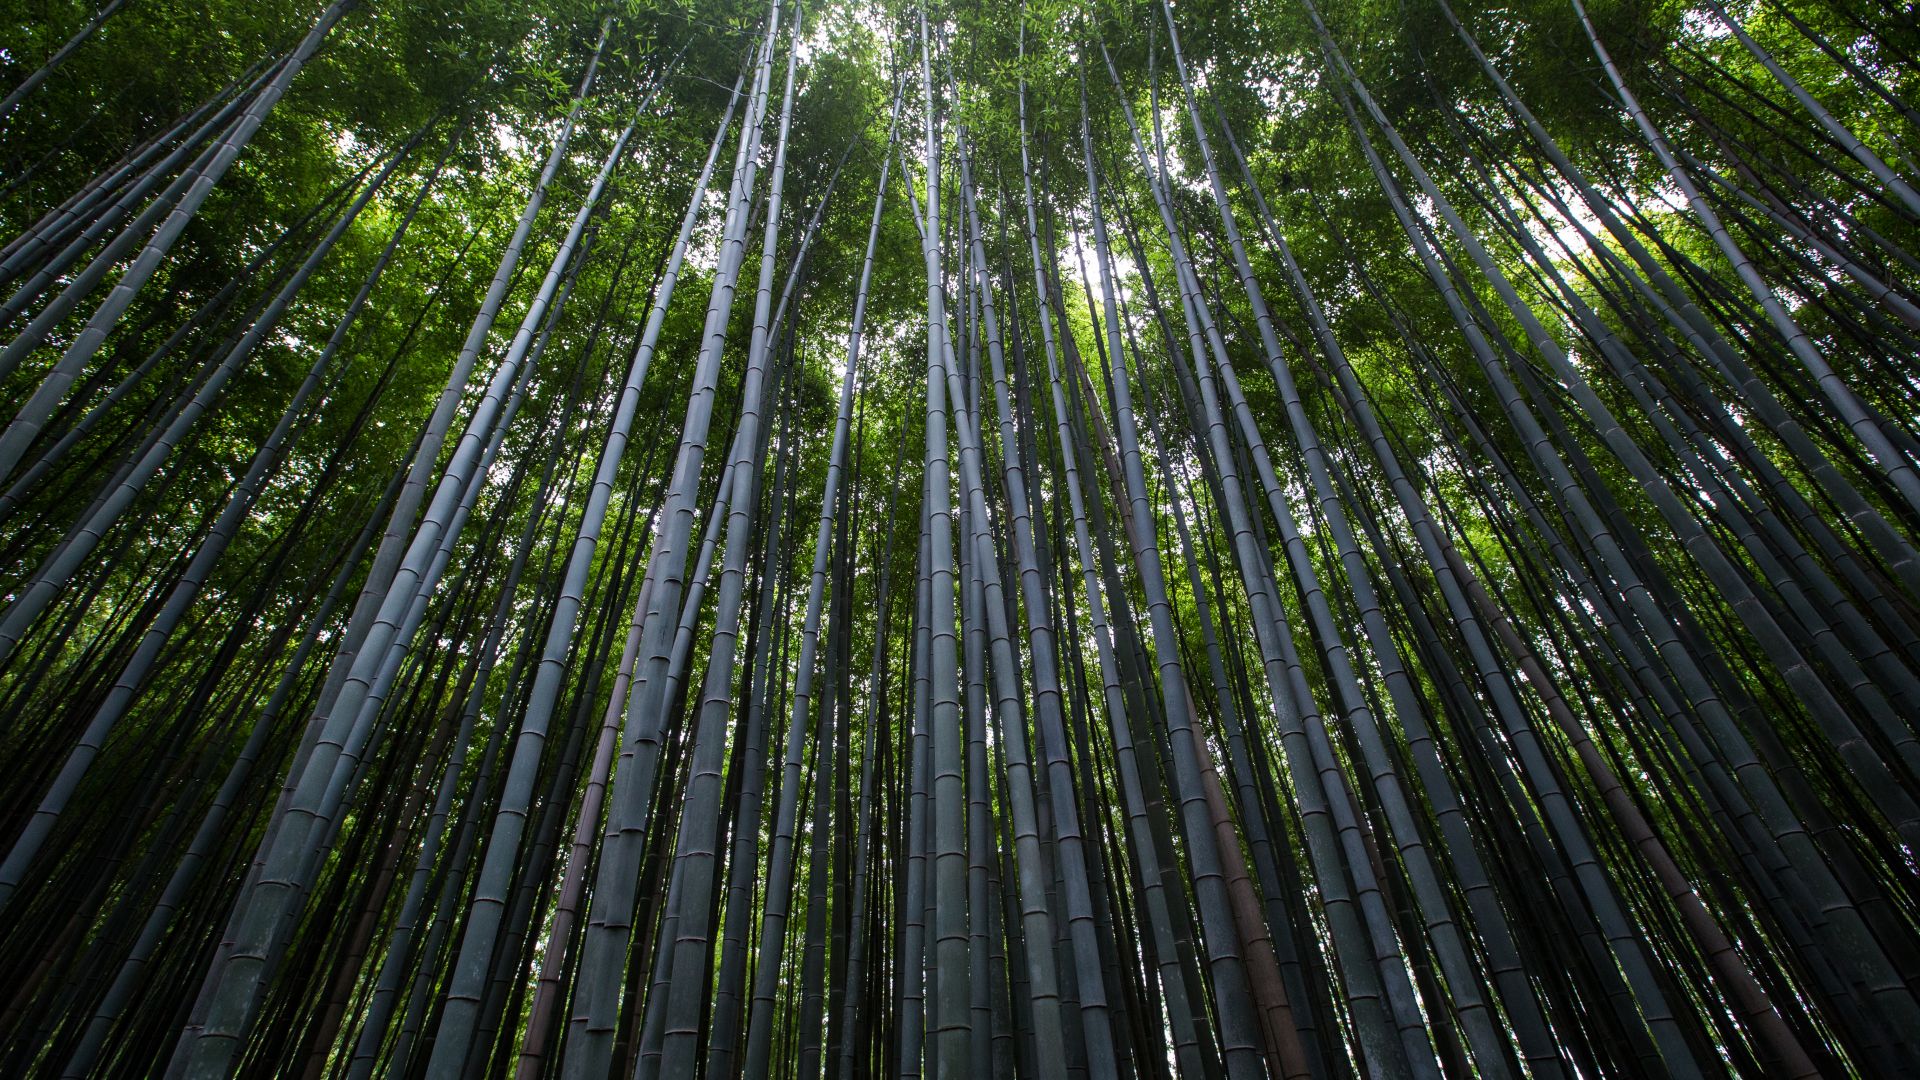 Forest, 4k, 5k wallpaper, 8k, trees, green, bamboo (horizontal)